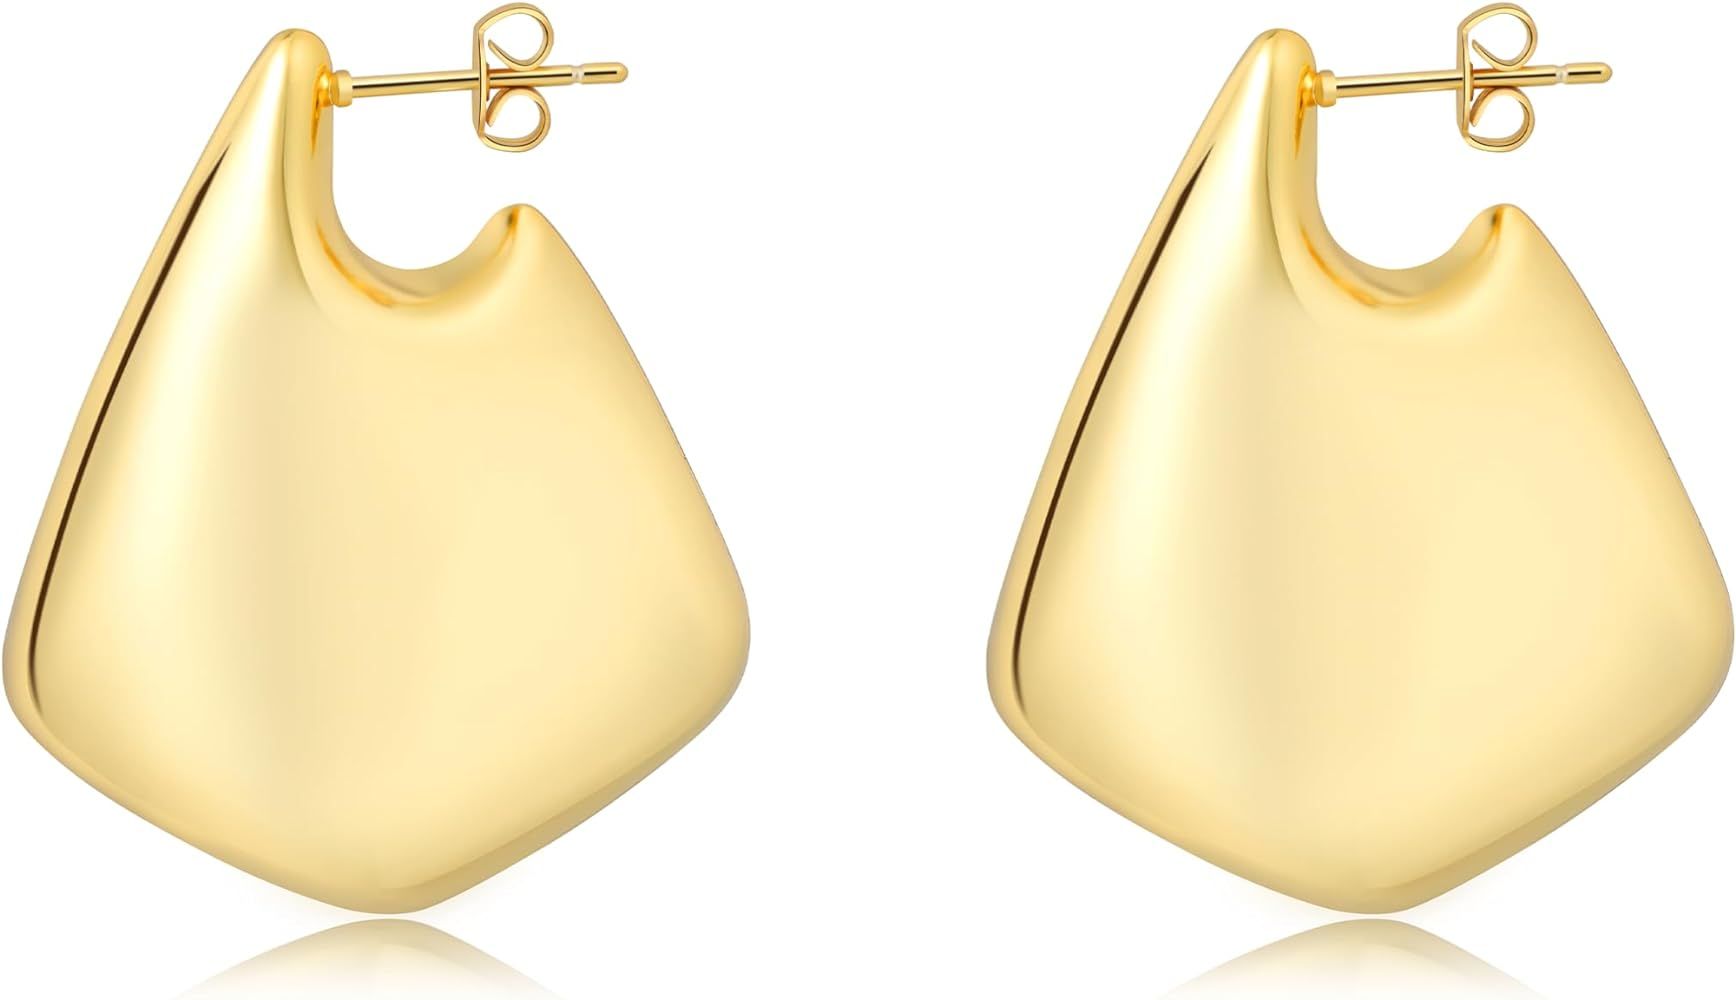 Chunky Gold/Silver earrings, Big Statement Earrings for Women Drop Hoop Earrings Sterling Silver ... | Amazon (US)